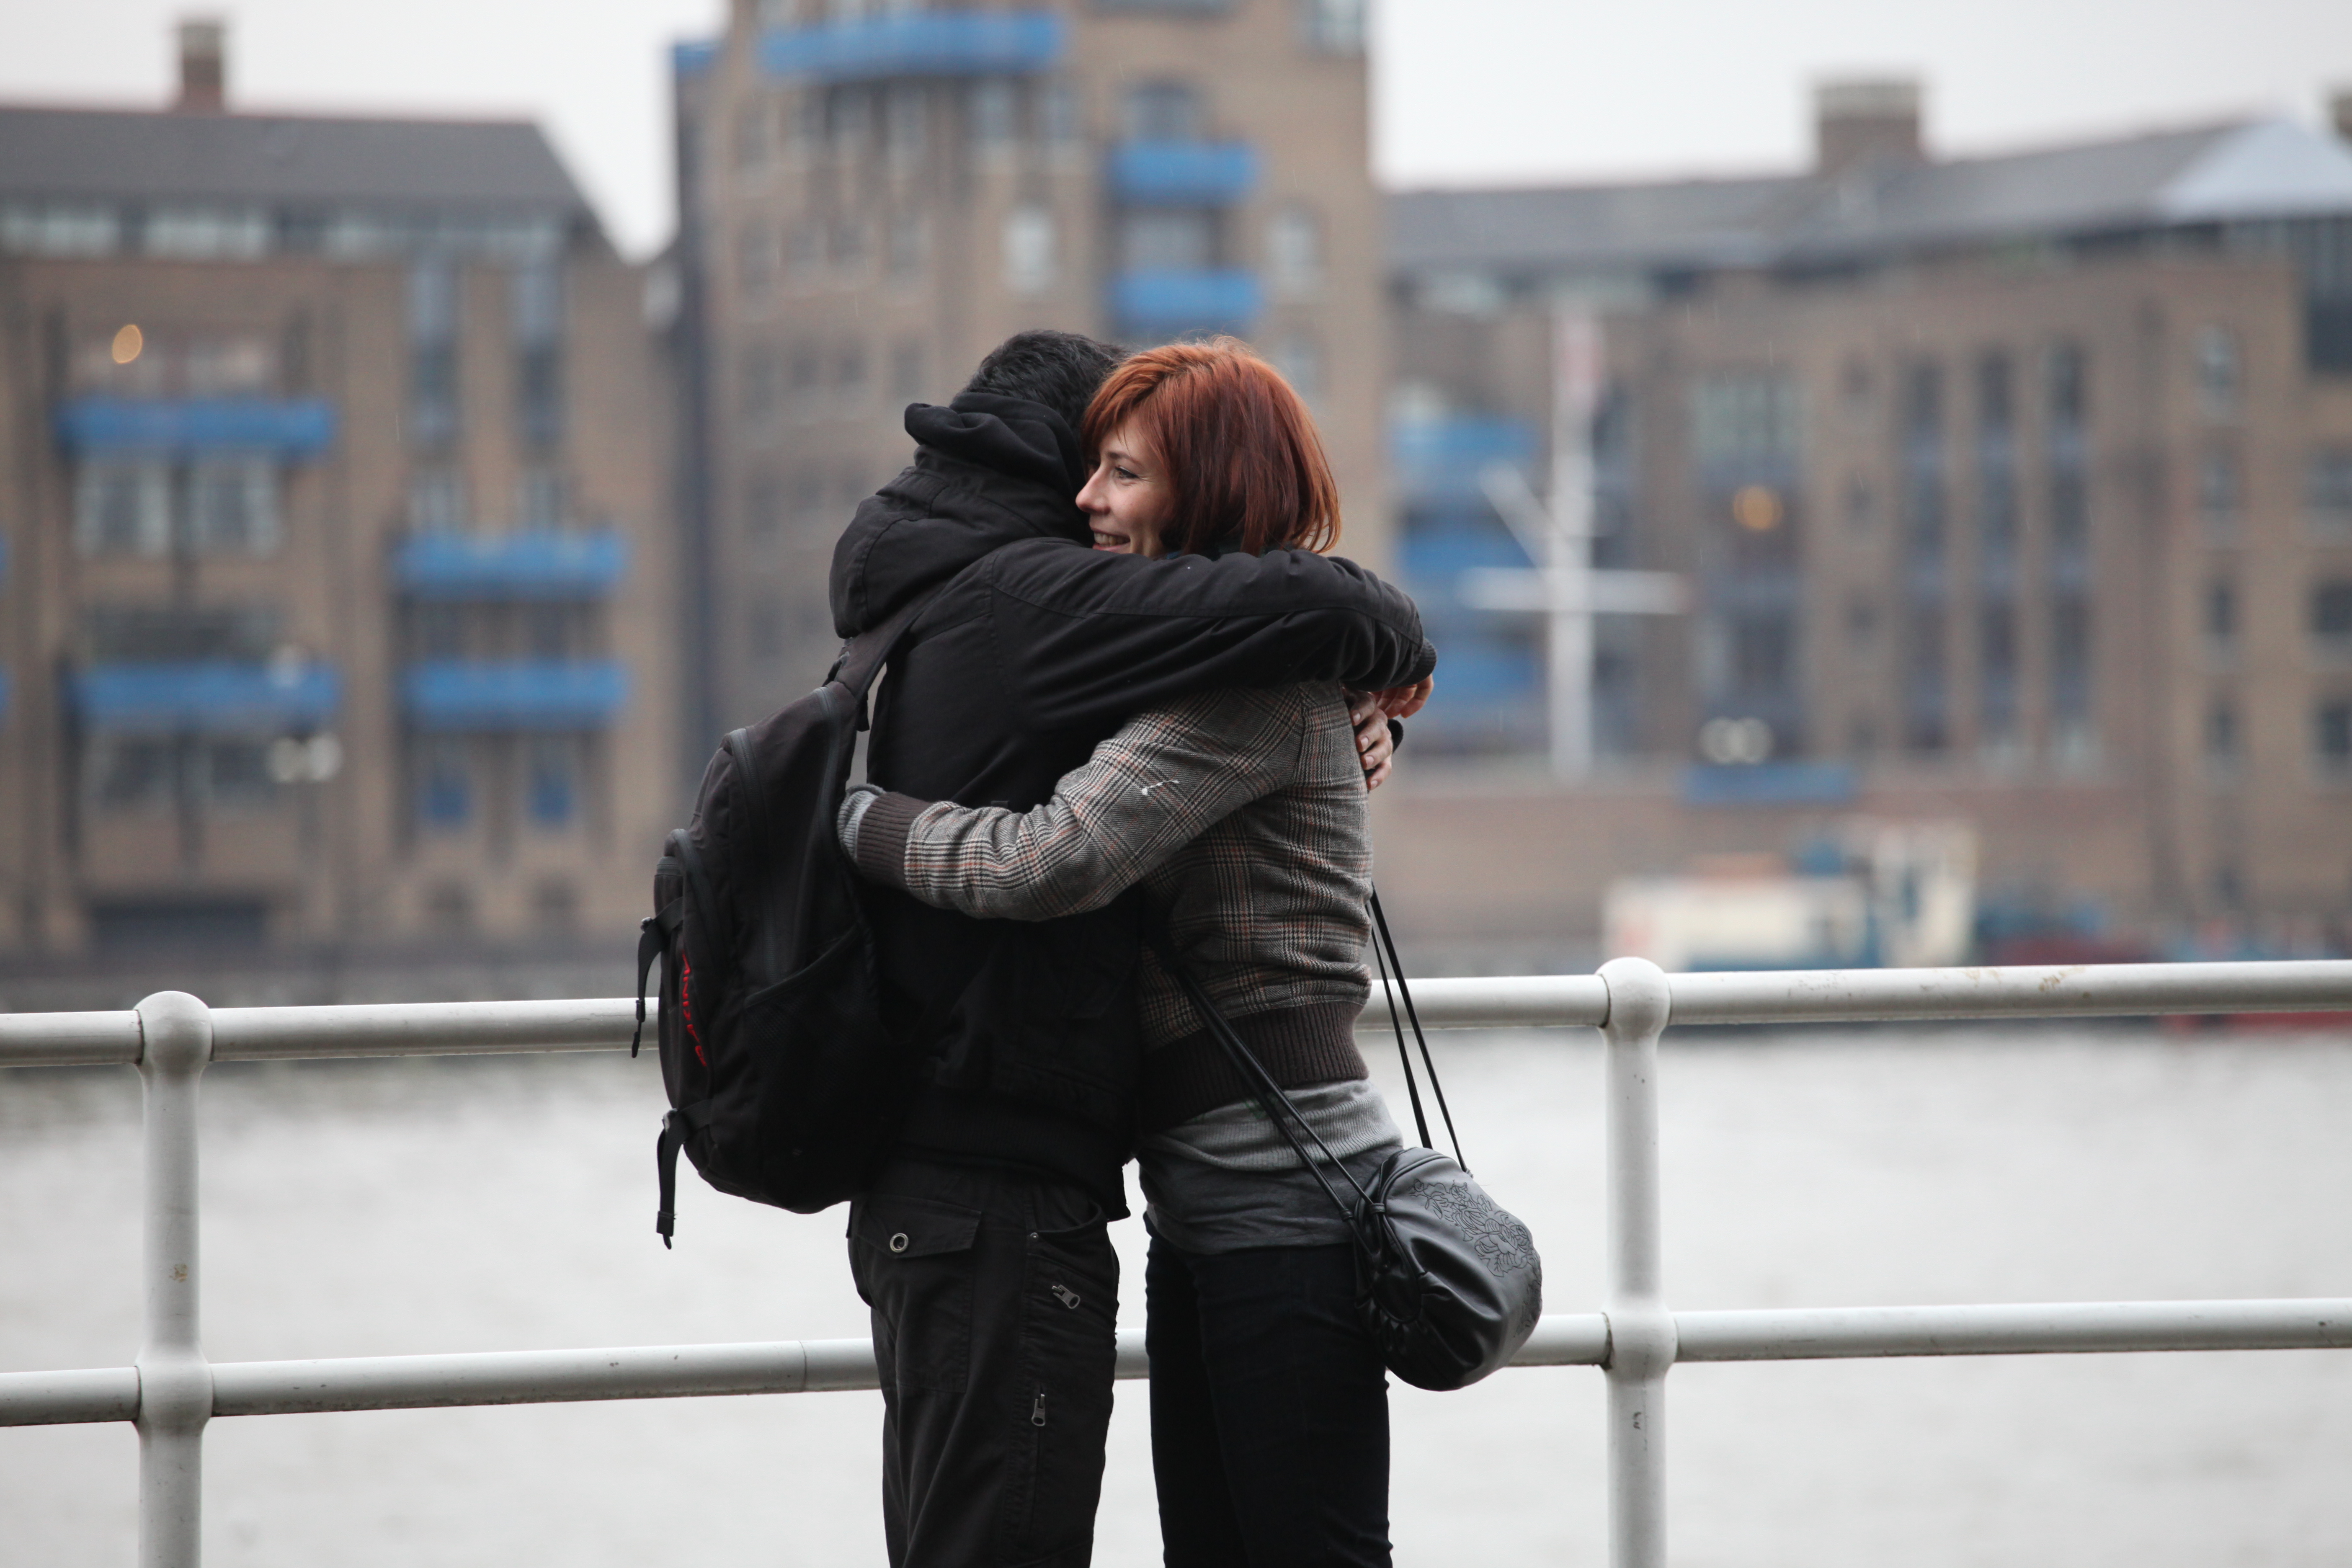 Незнакомый парень обнимает. Люди обнимаются. Обнимаются на улице. Пара обнимается. Обнимаются на прощание.